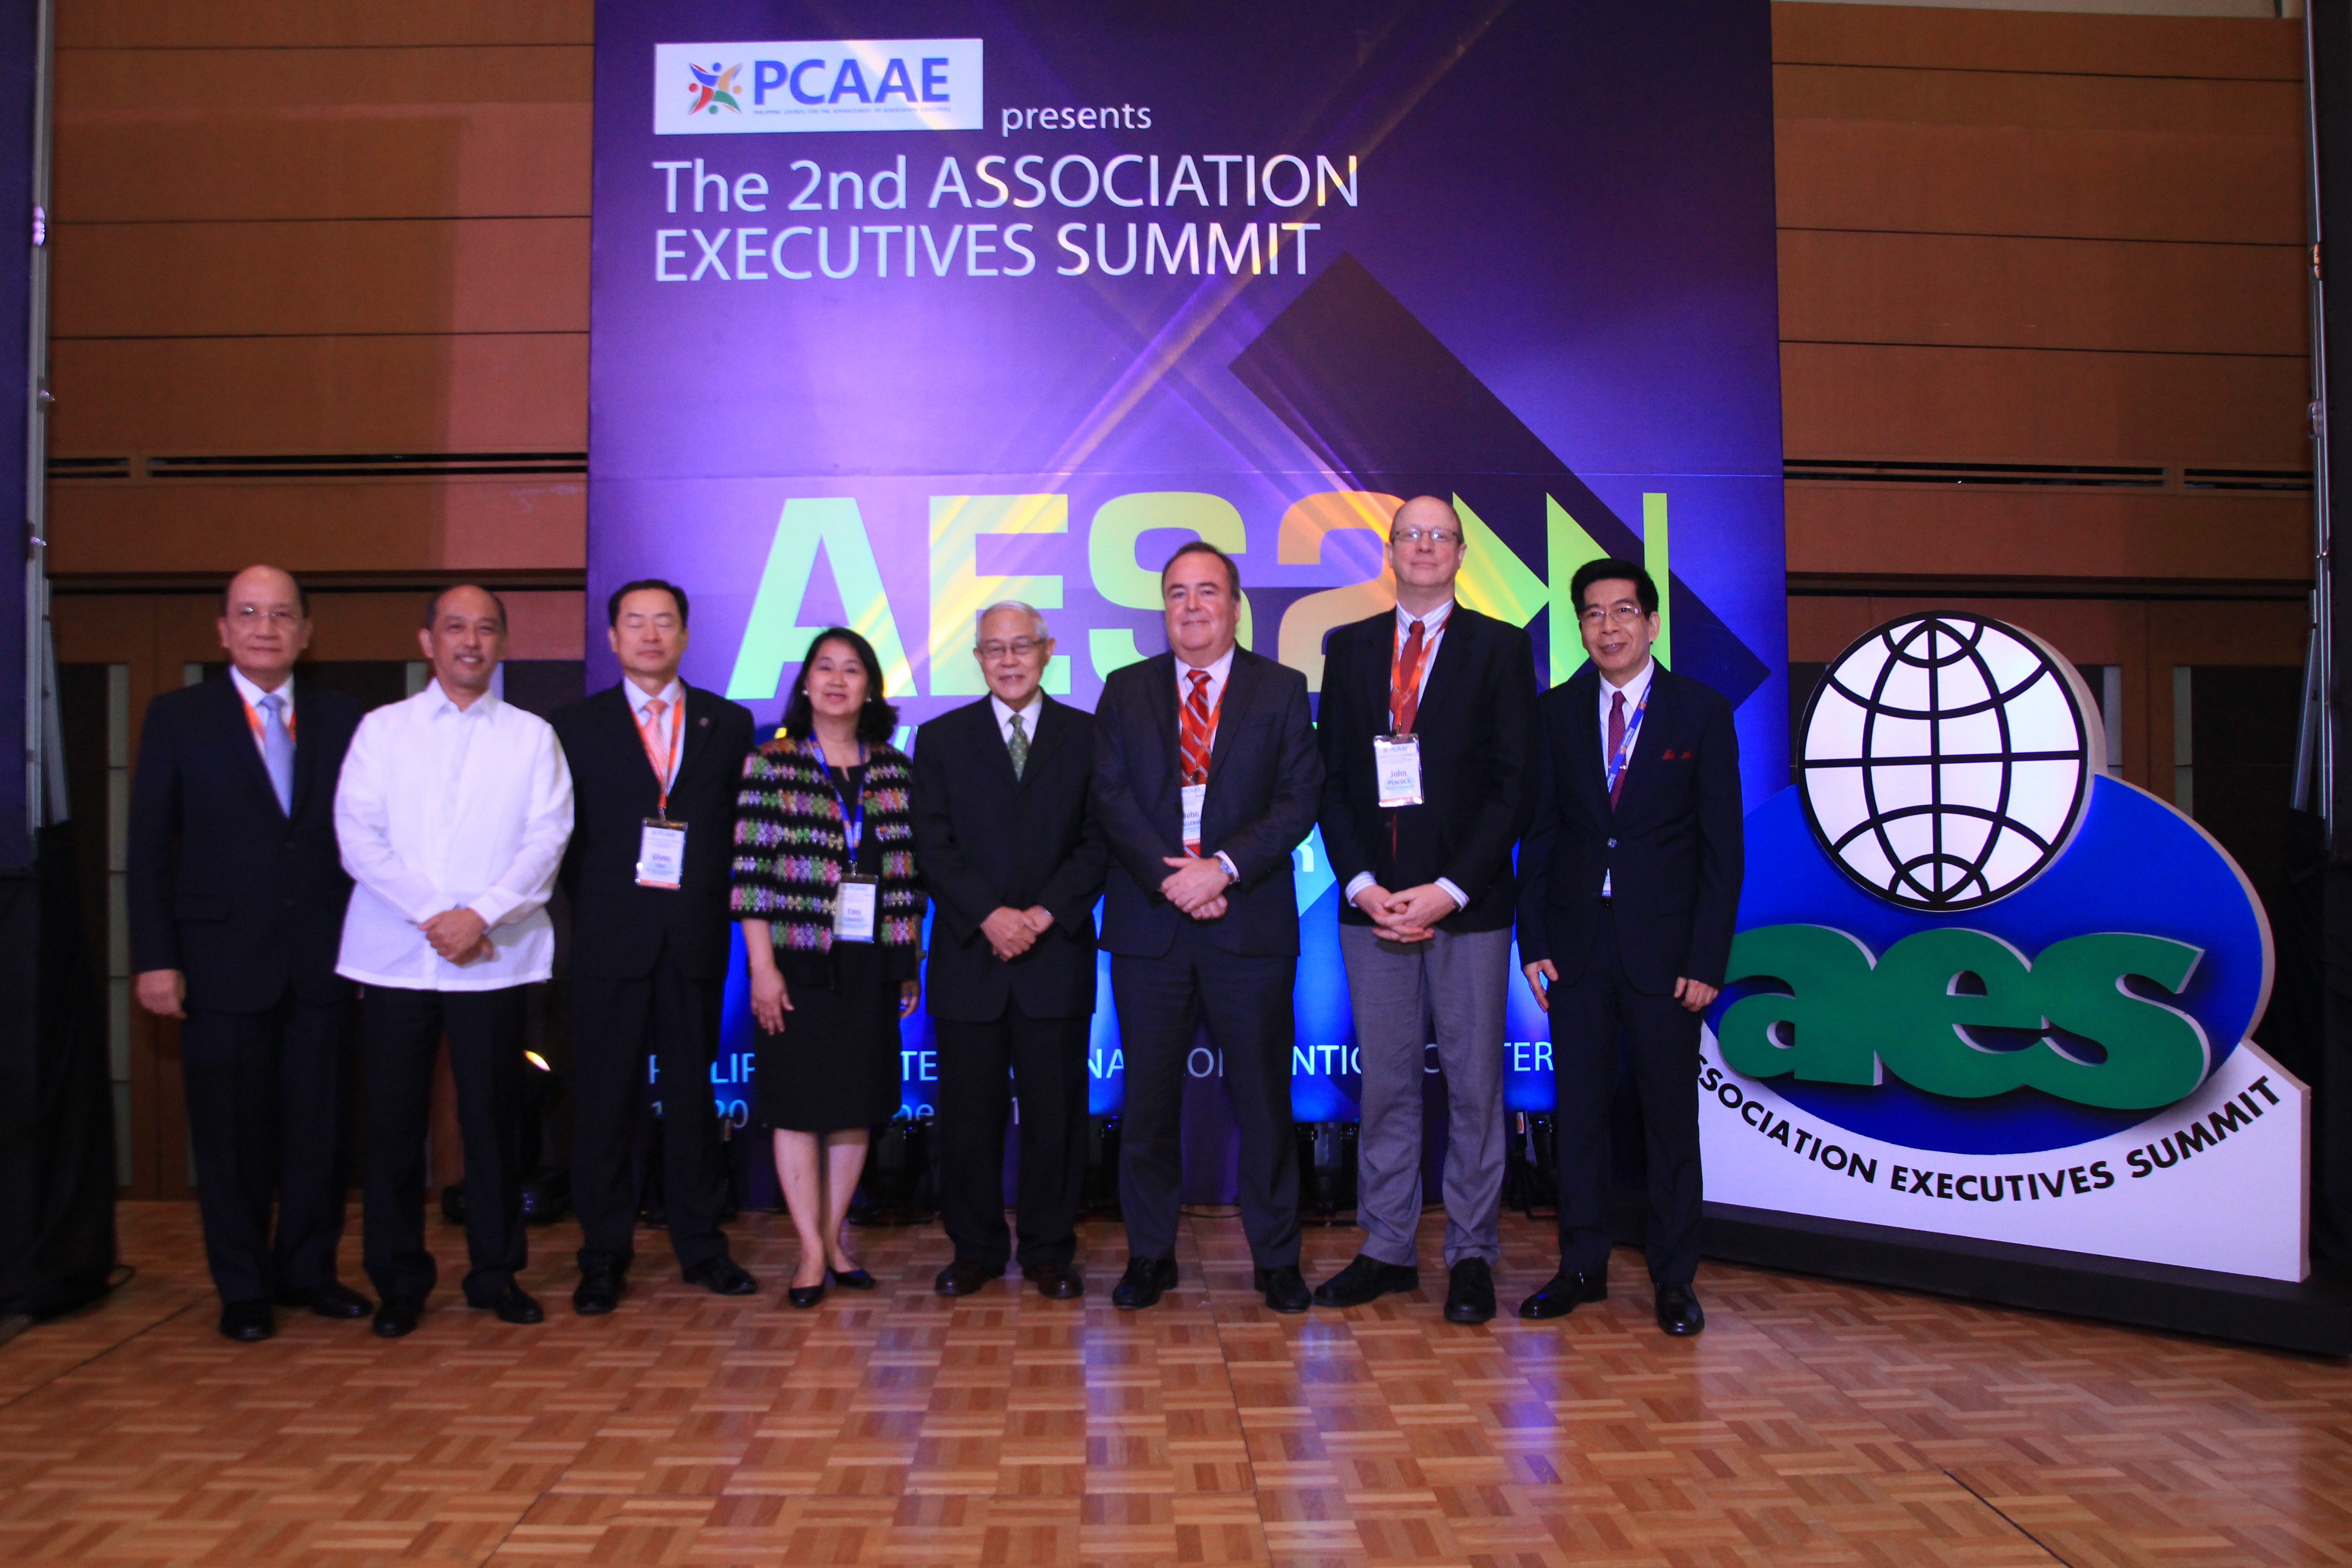 PCAAE grants honorary membership to J. Peacock, G. Cho